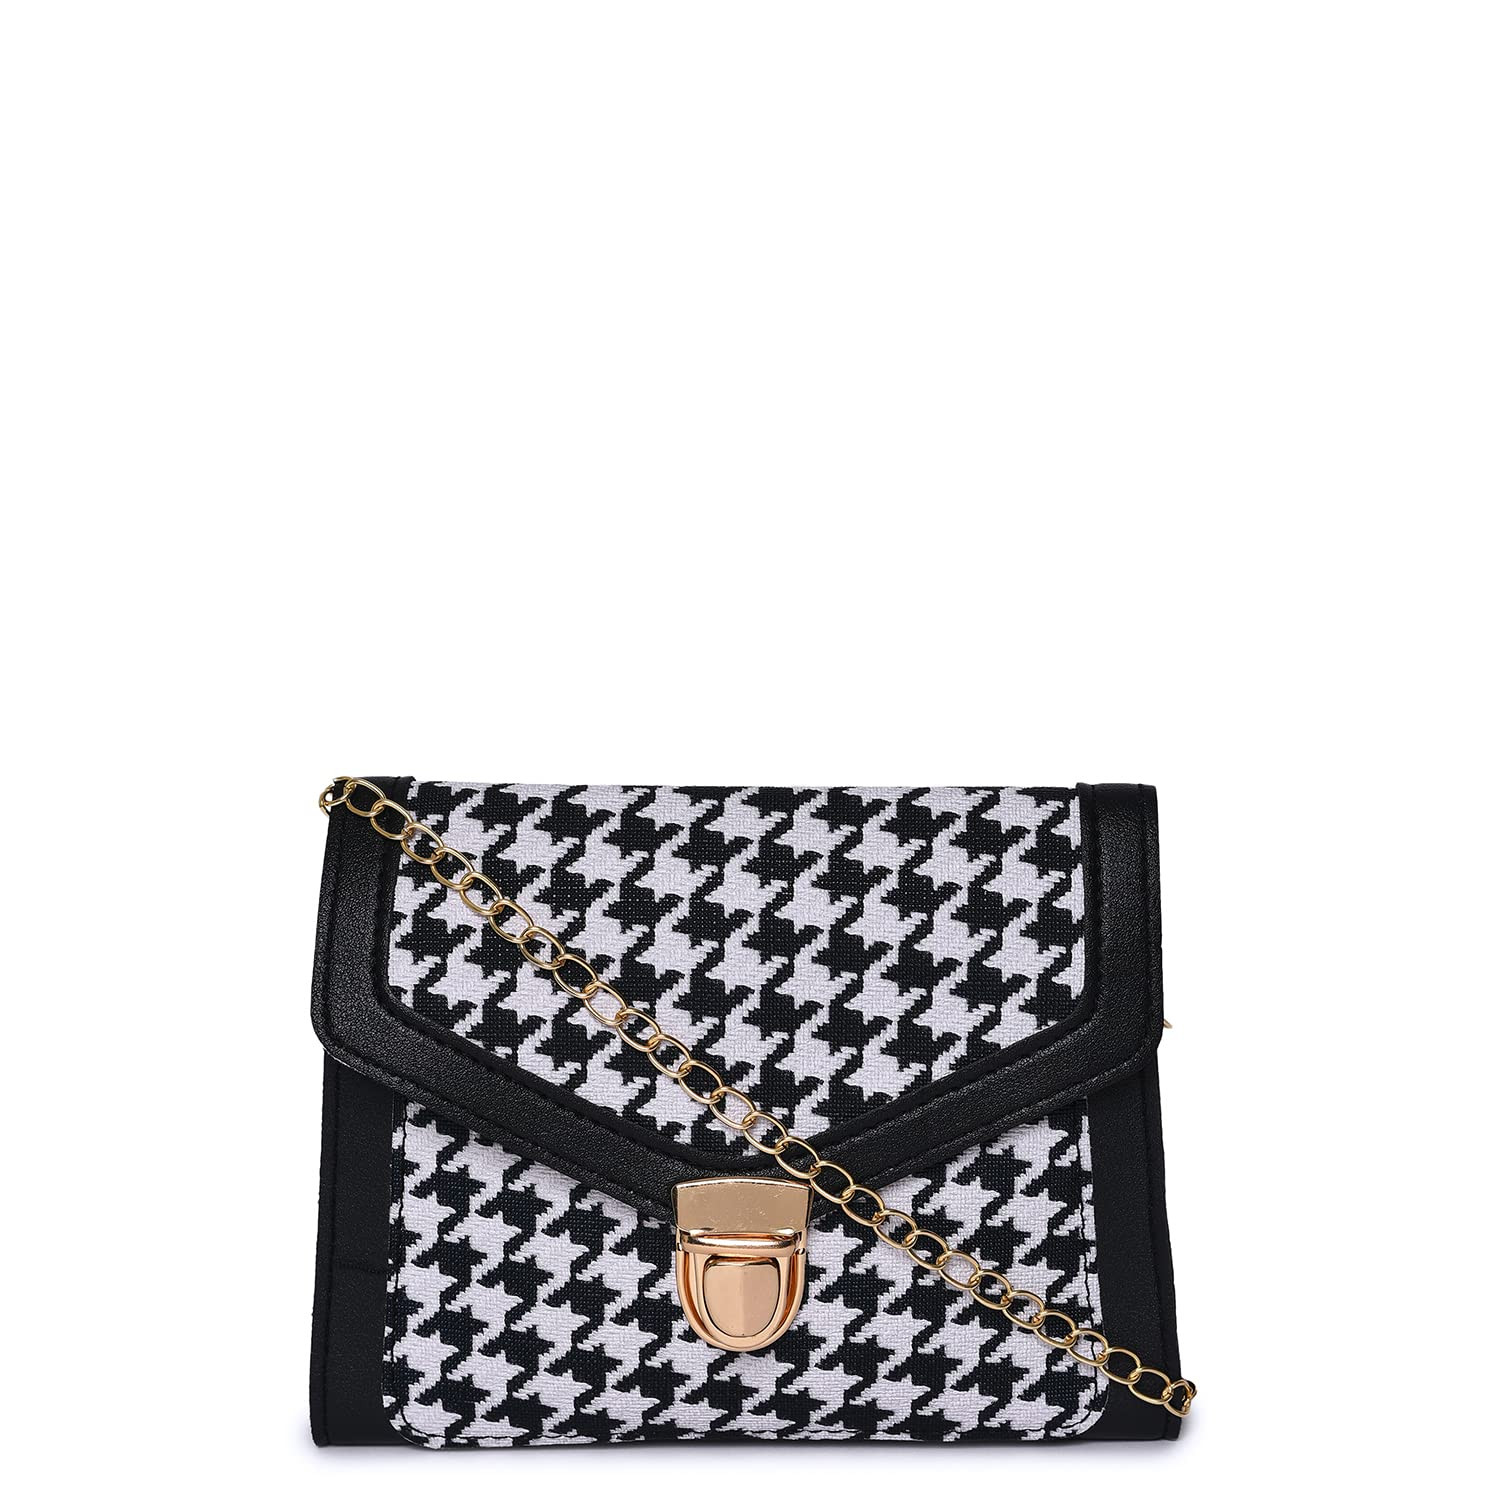 5 Handbag For Women: Trendy Handbags For Women To Bookmark For Summer ASAP